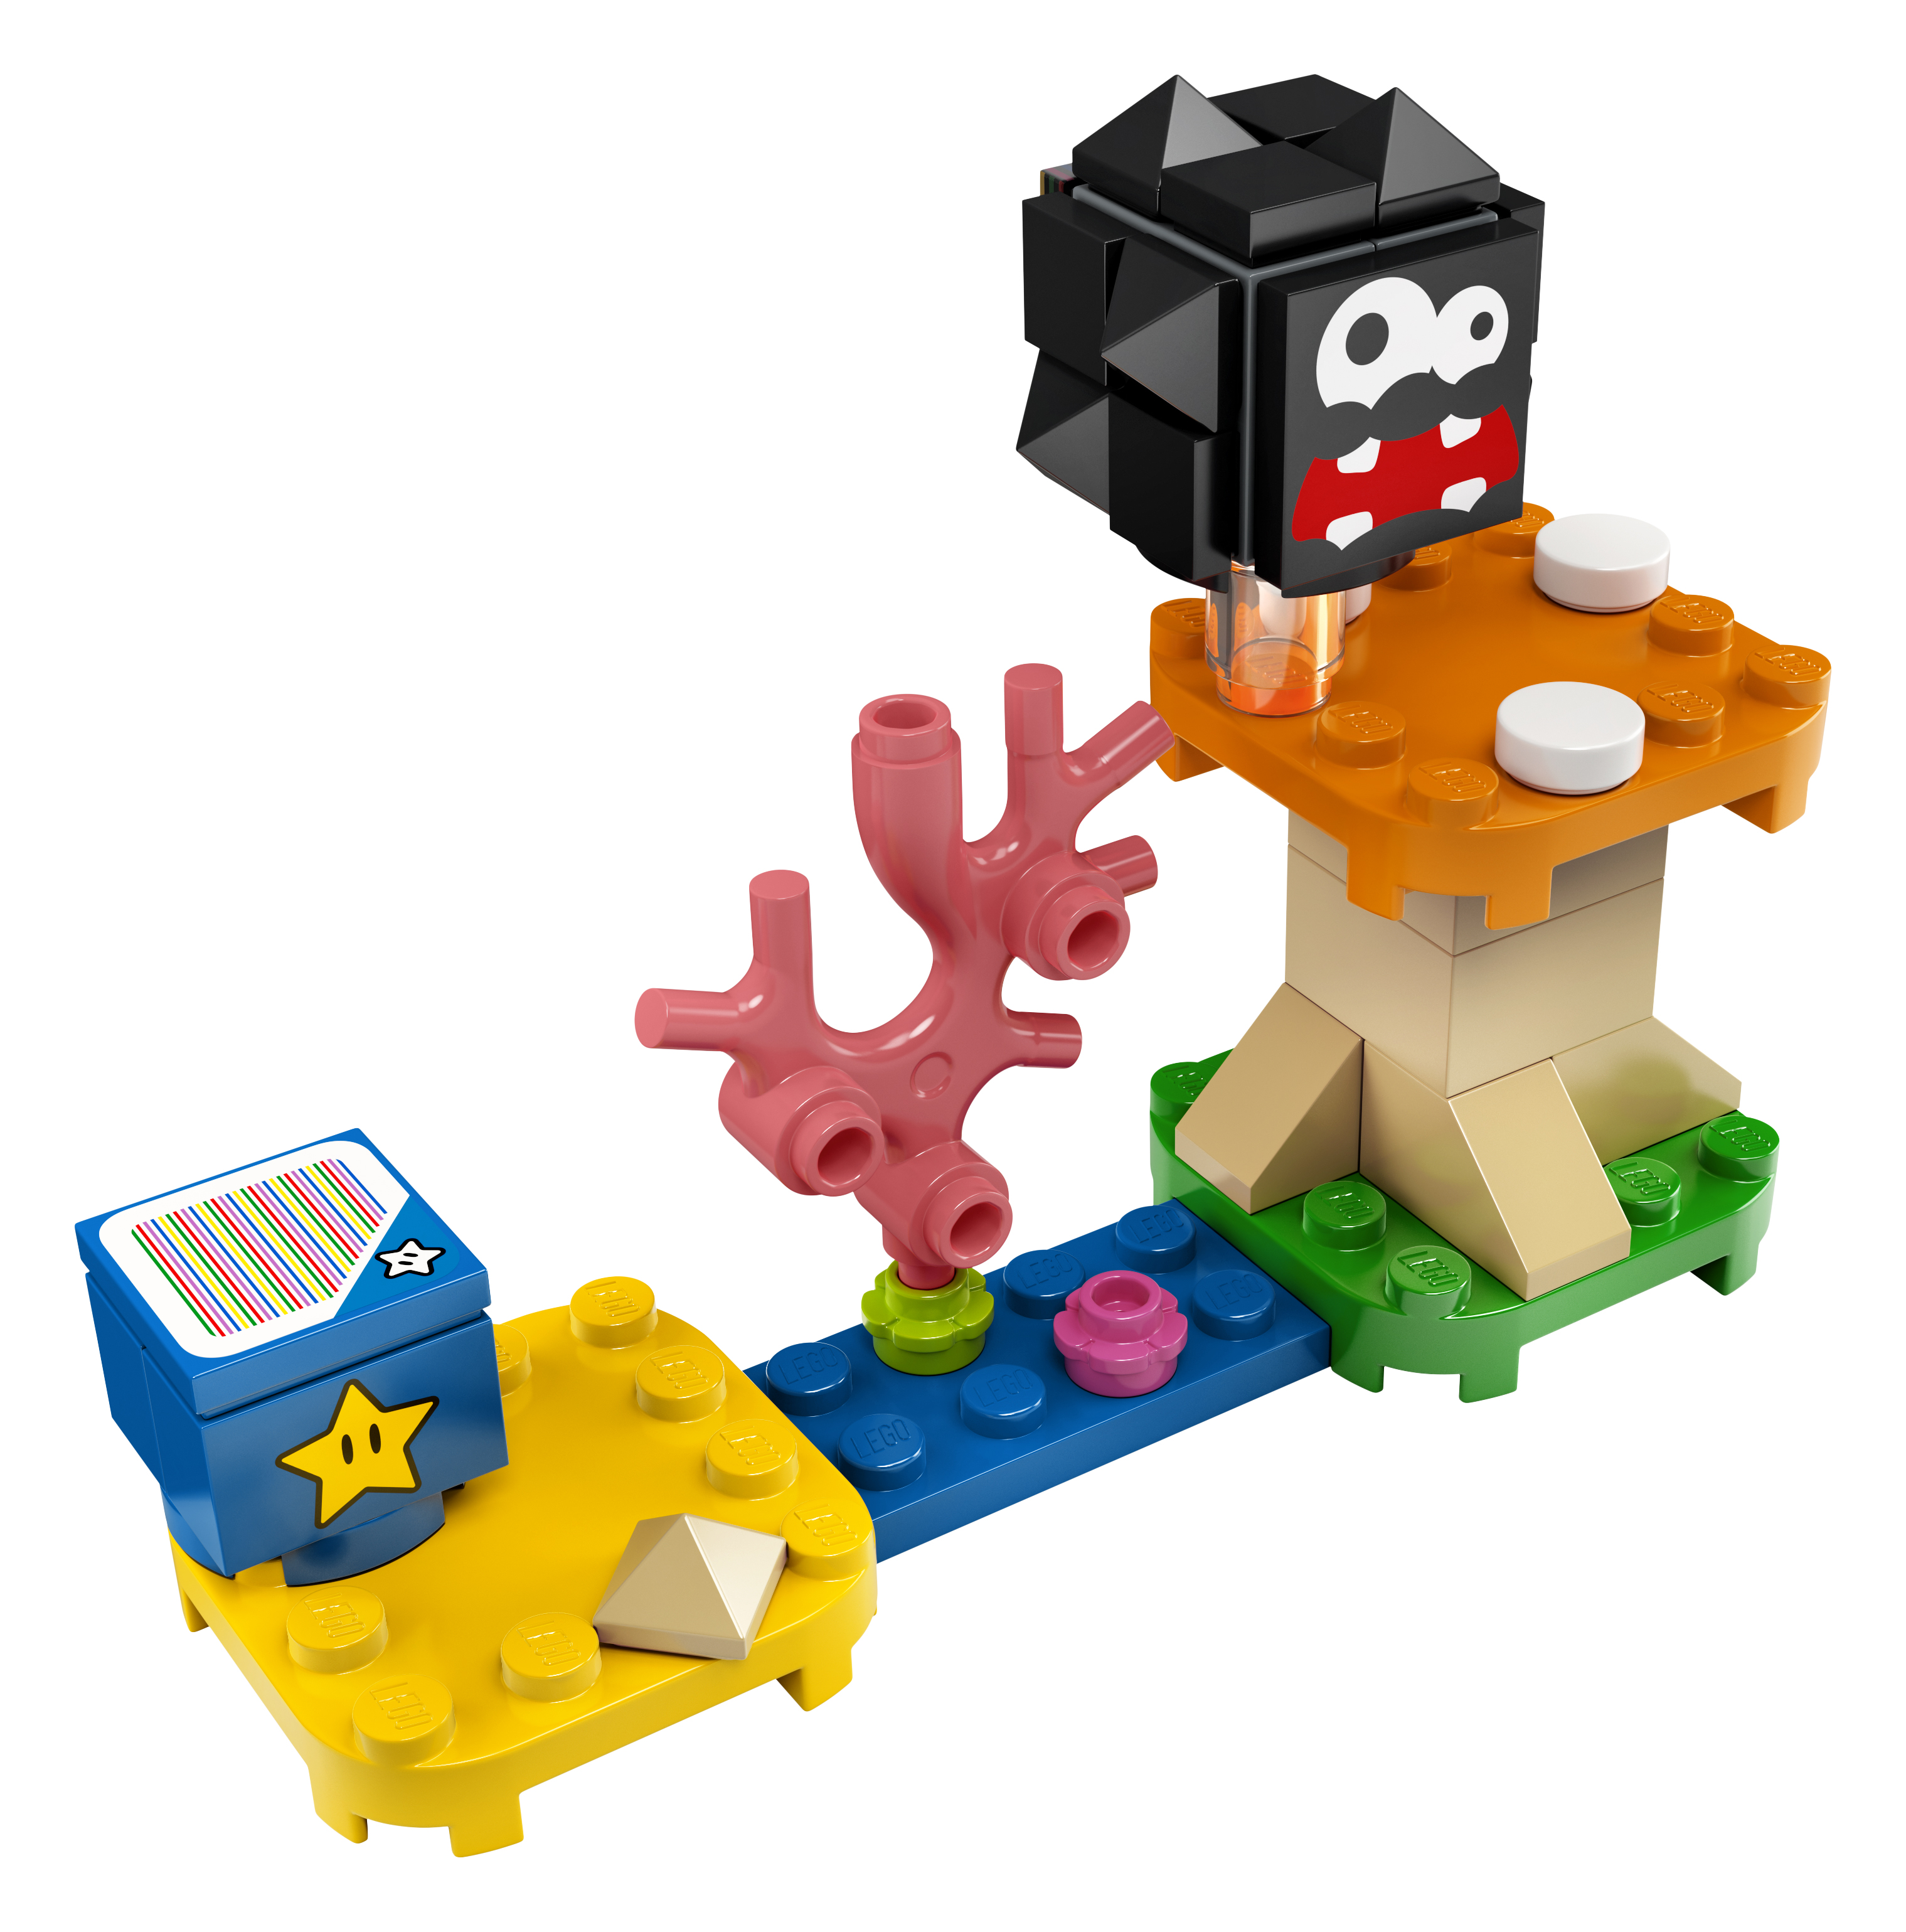 LEGO® Super Mario™ 30389 Fuzzy & Pilz-Plattform – Erweiterungsset Polybag